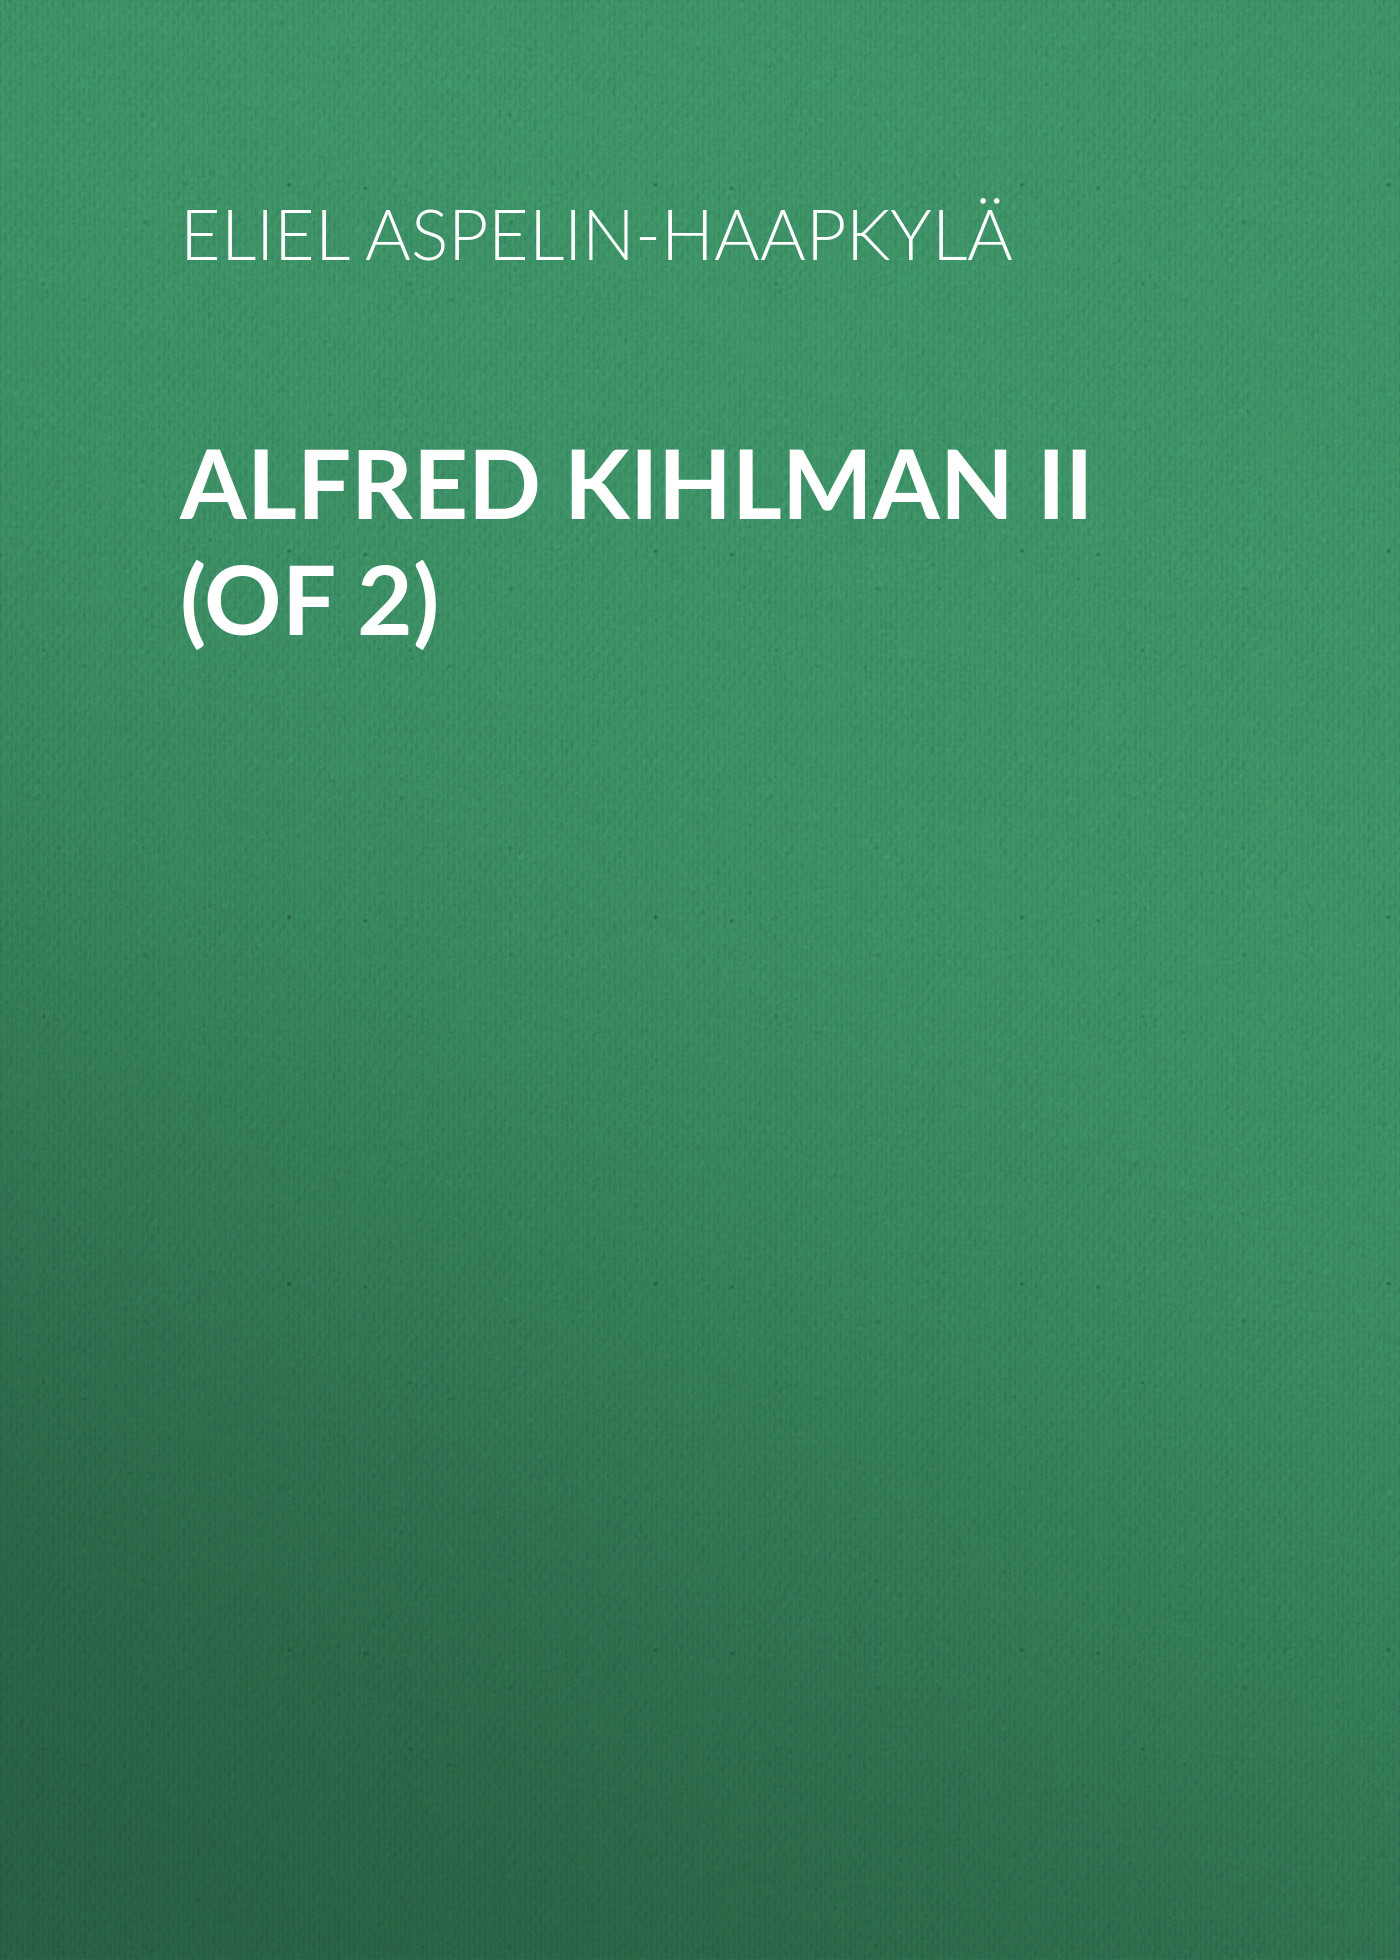 Книга Alfred Kihlman II (of 2) из серии , созданная Eliel Aspelin-Haapkylä, может относится к жанру Зарубежная старинная литература, Зарубежная классика. Стоимость электронной книги Alfred Kihlman II (of 2) с идентификатором 24176460 составляет 0 руб.